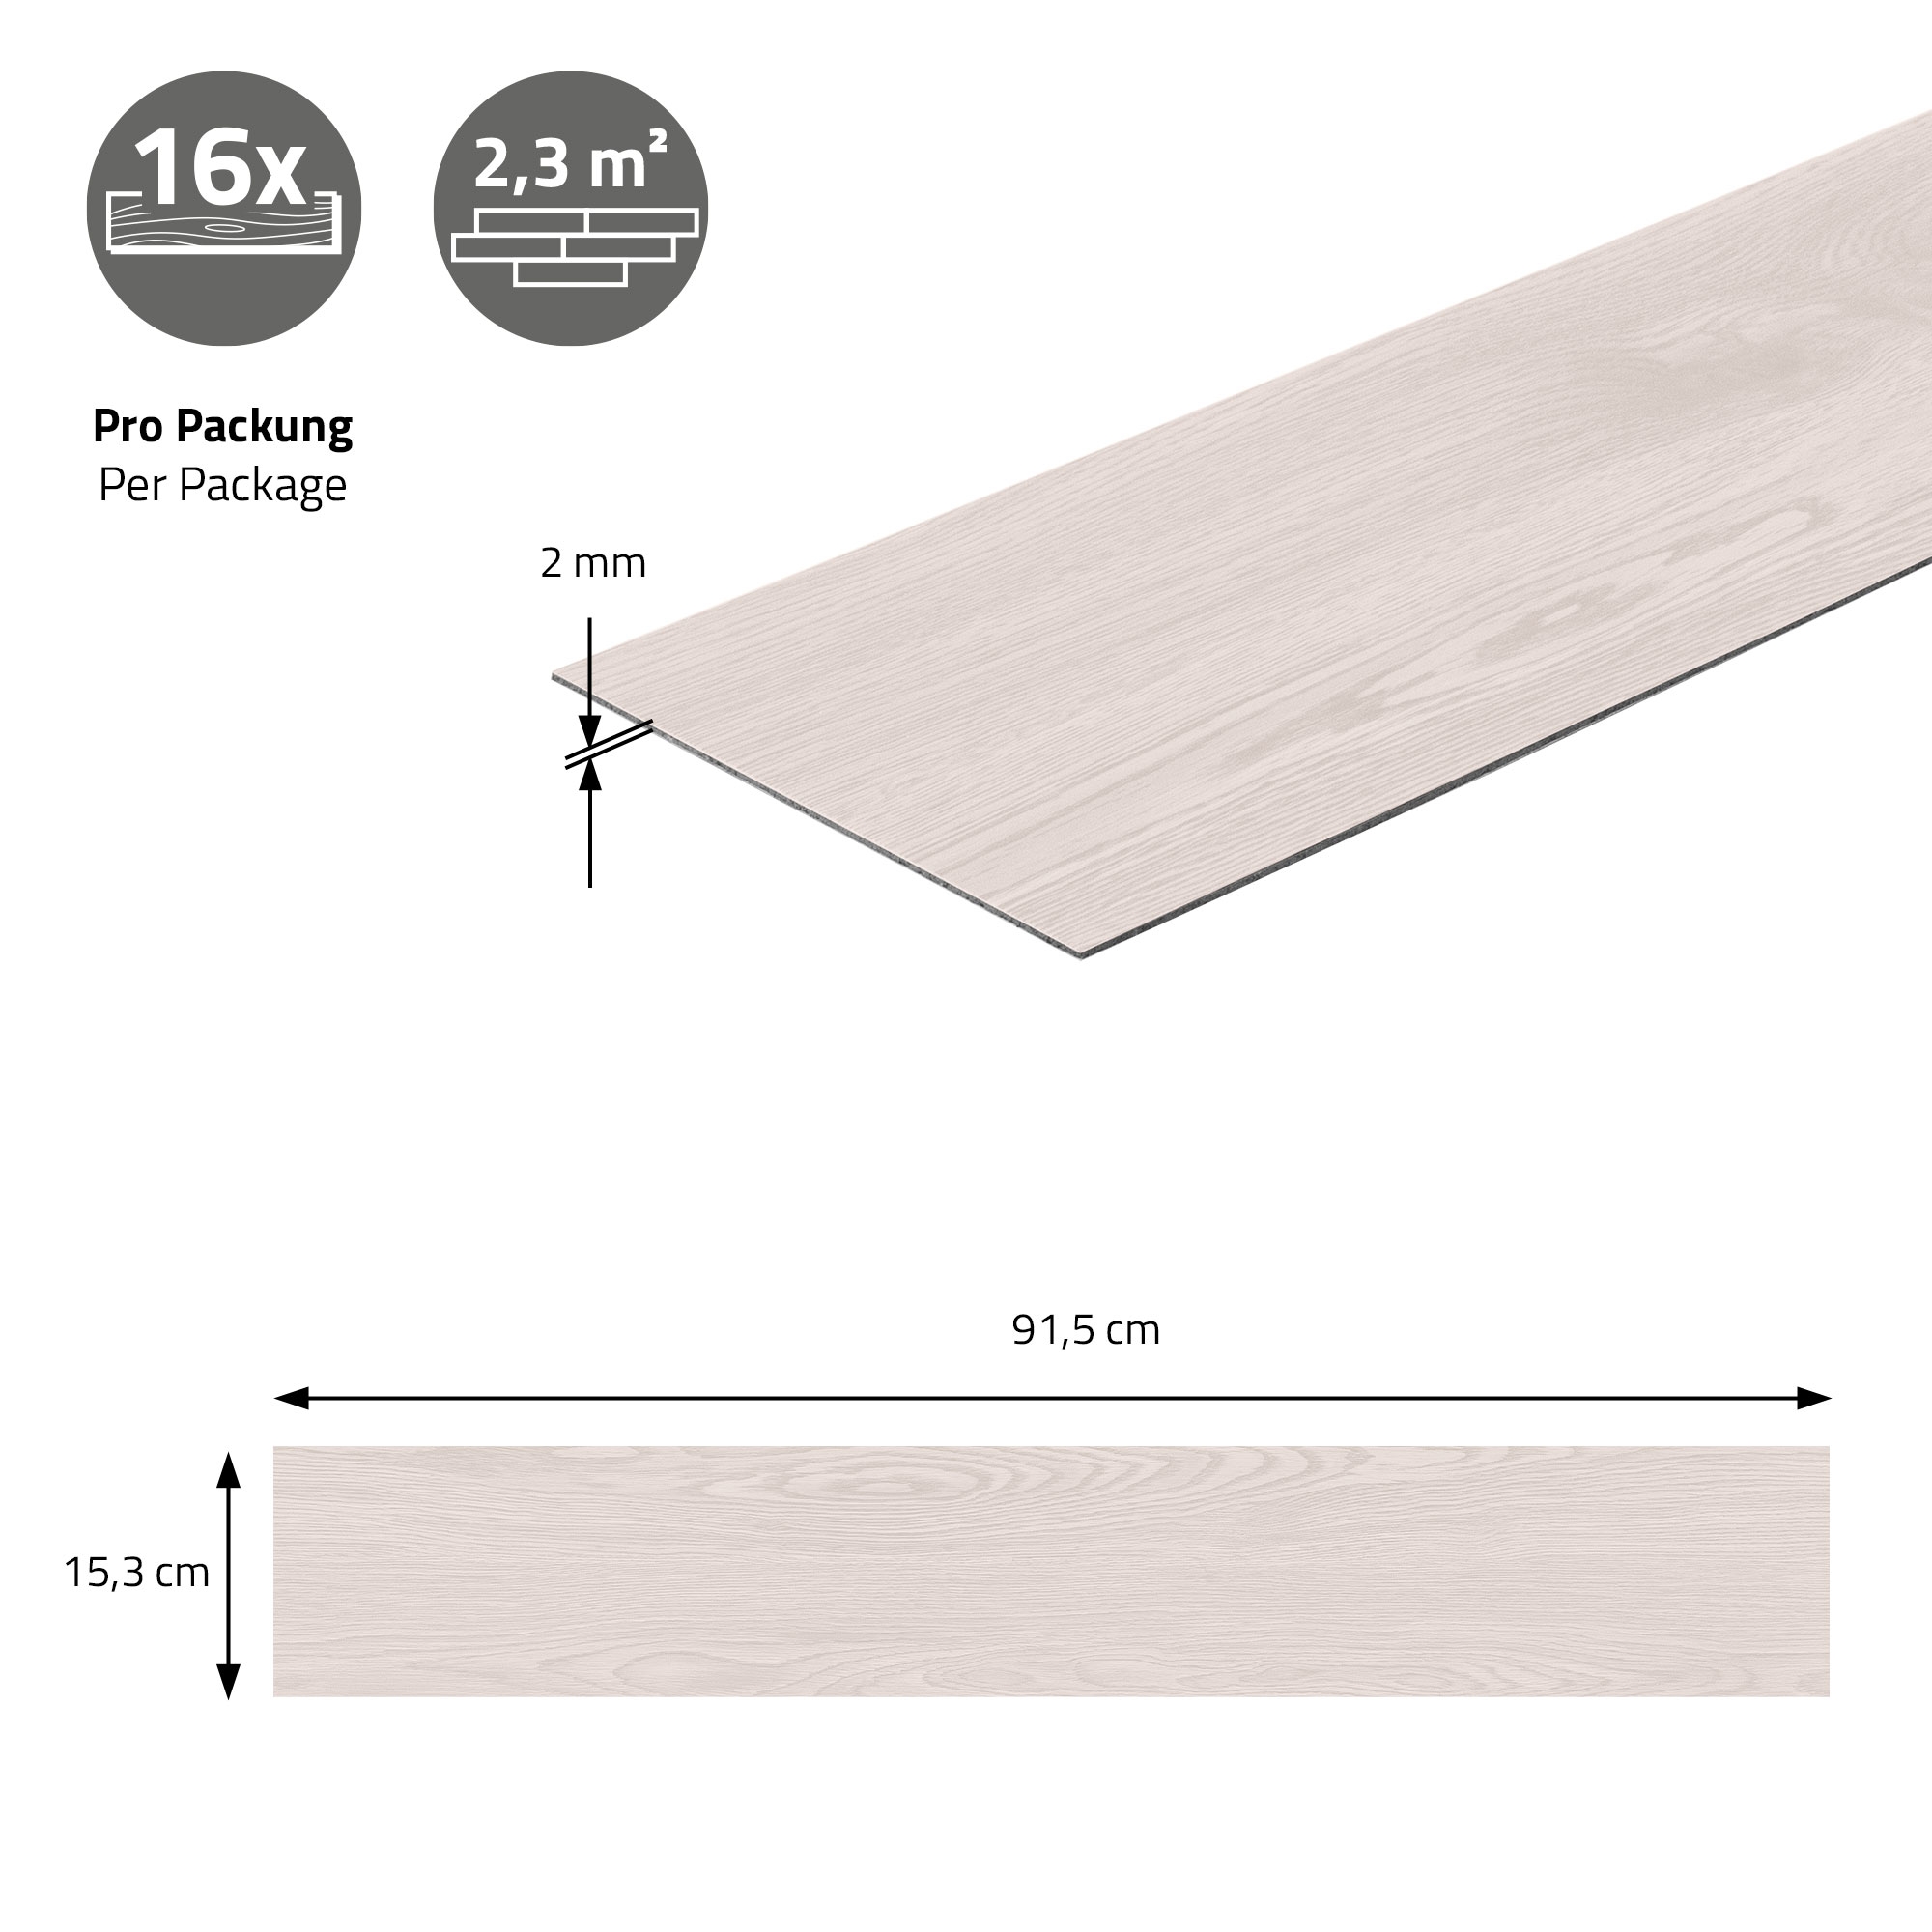 2,3 m² Suelo vinílico adhesivo PVC tarima de vinilo parquet laminado pino  gris